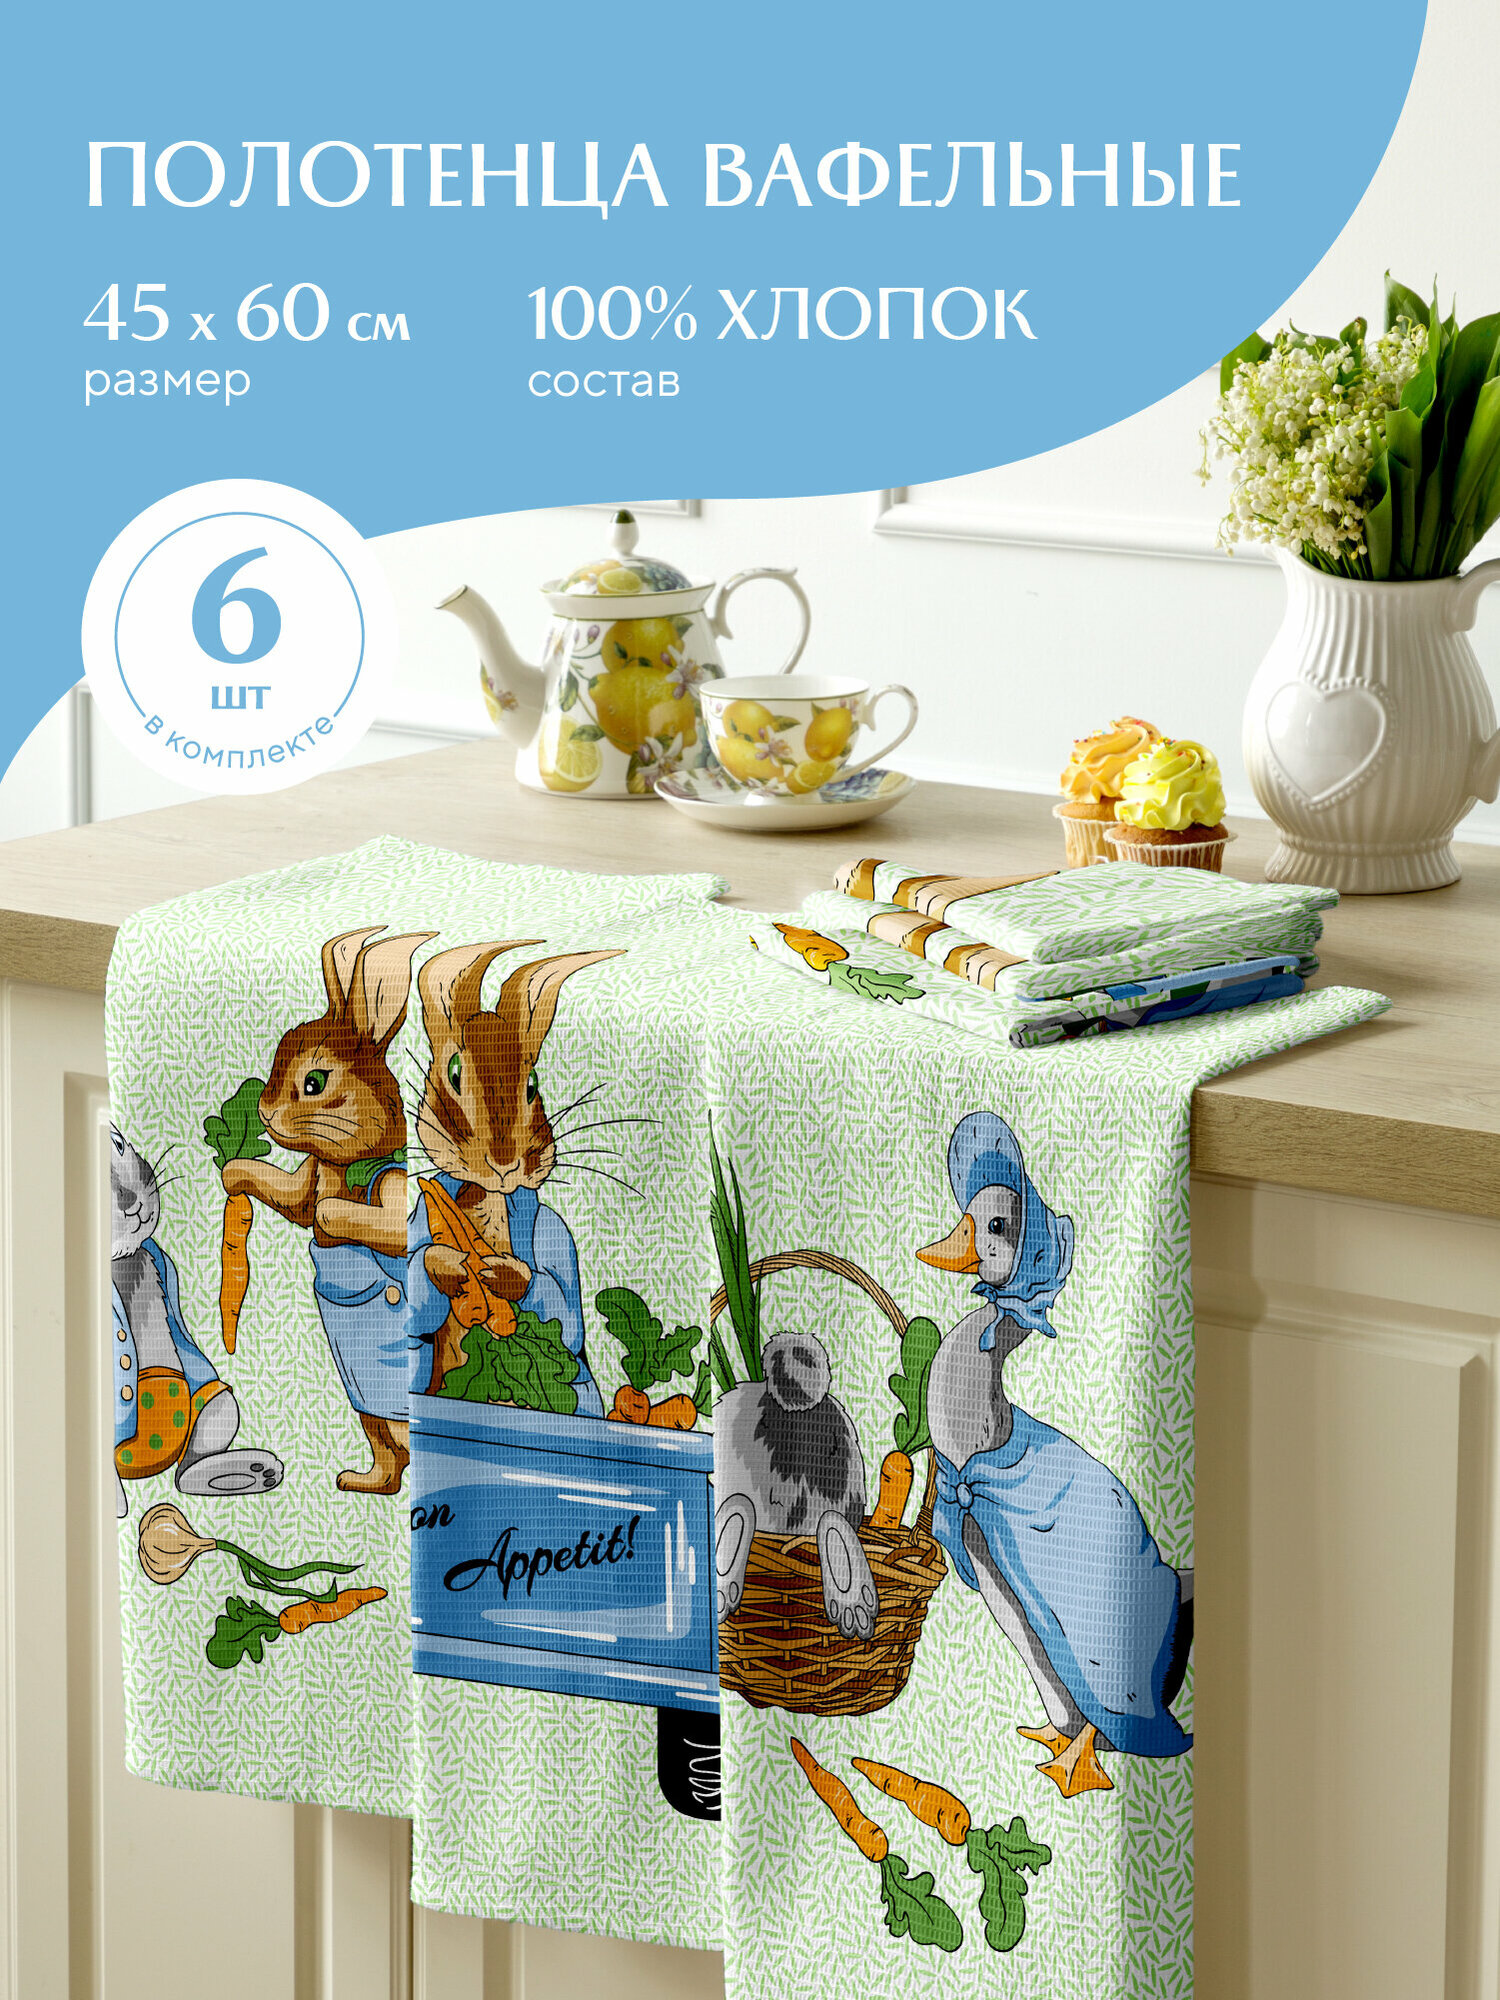 Набор вафельных полотенец 45х60 (6 шт.) "Mia Cara" рис 30632-1 Garden bunny - фотография № 1